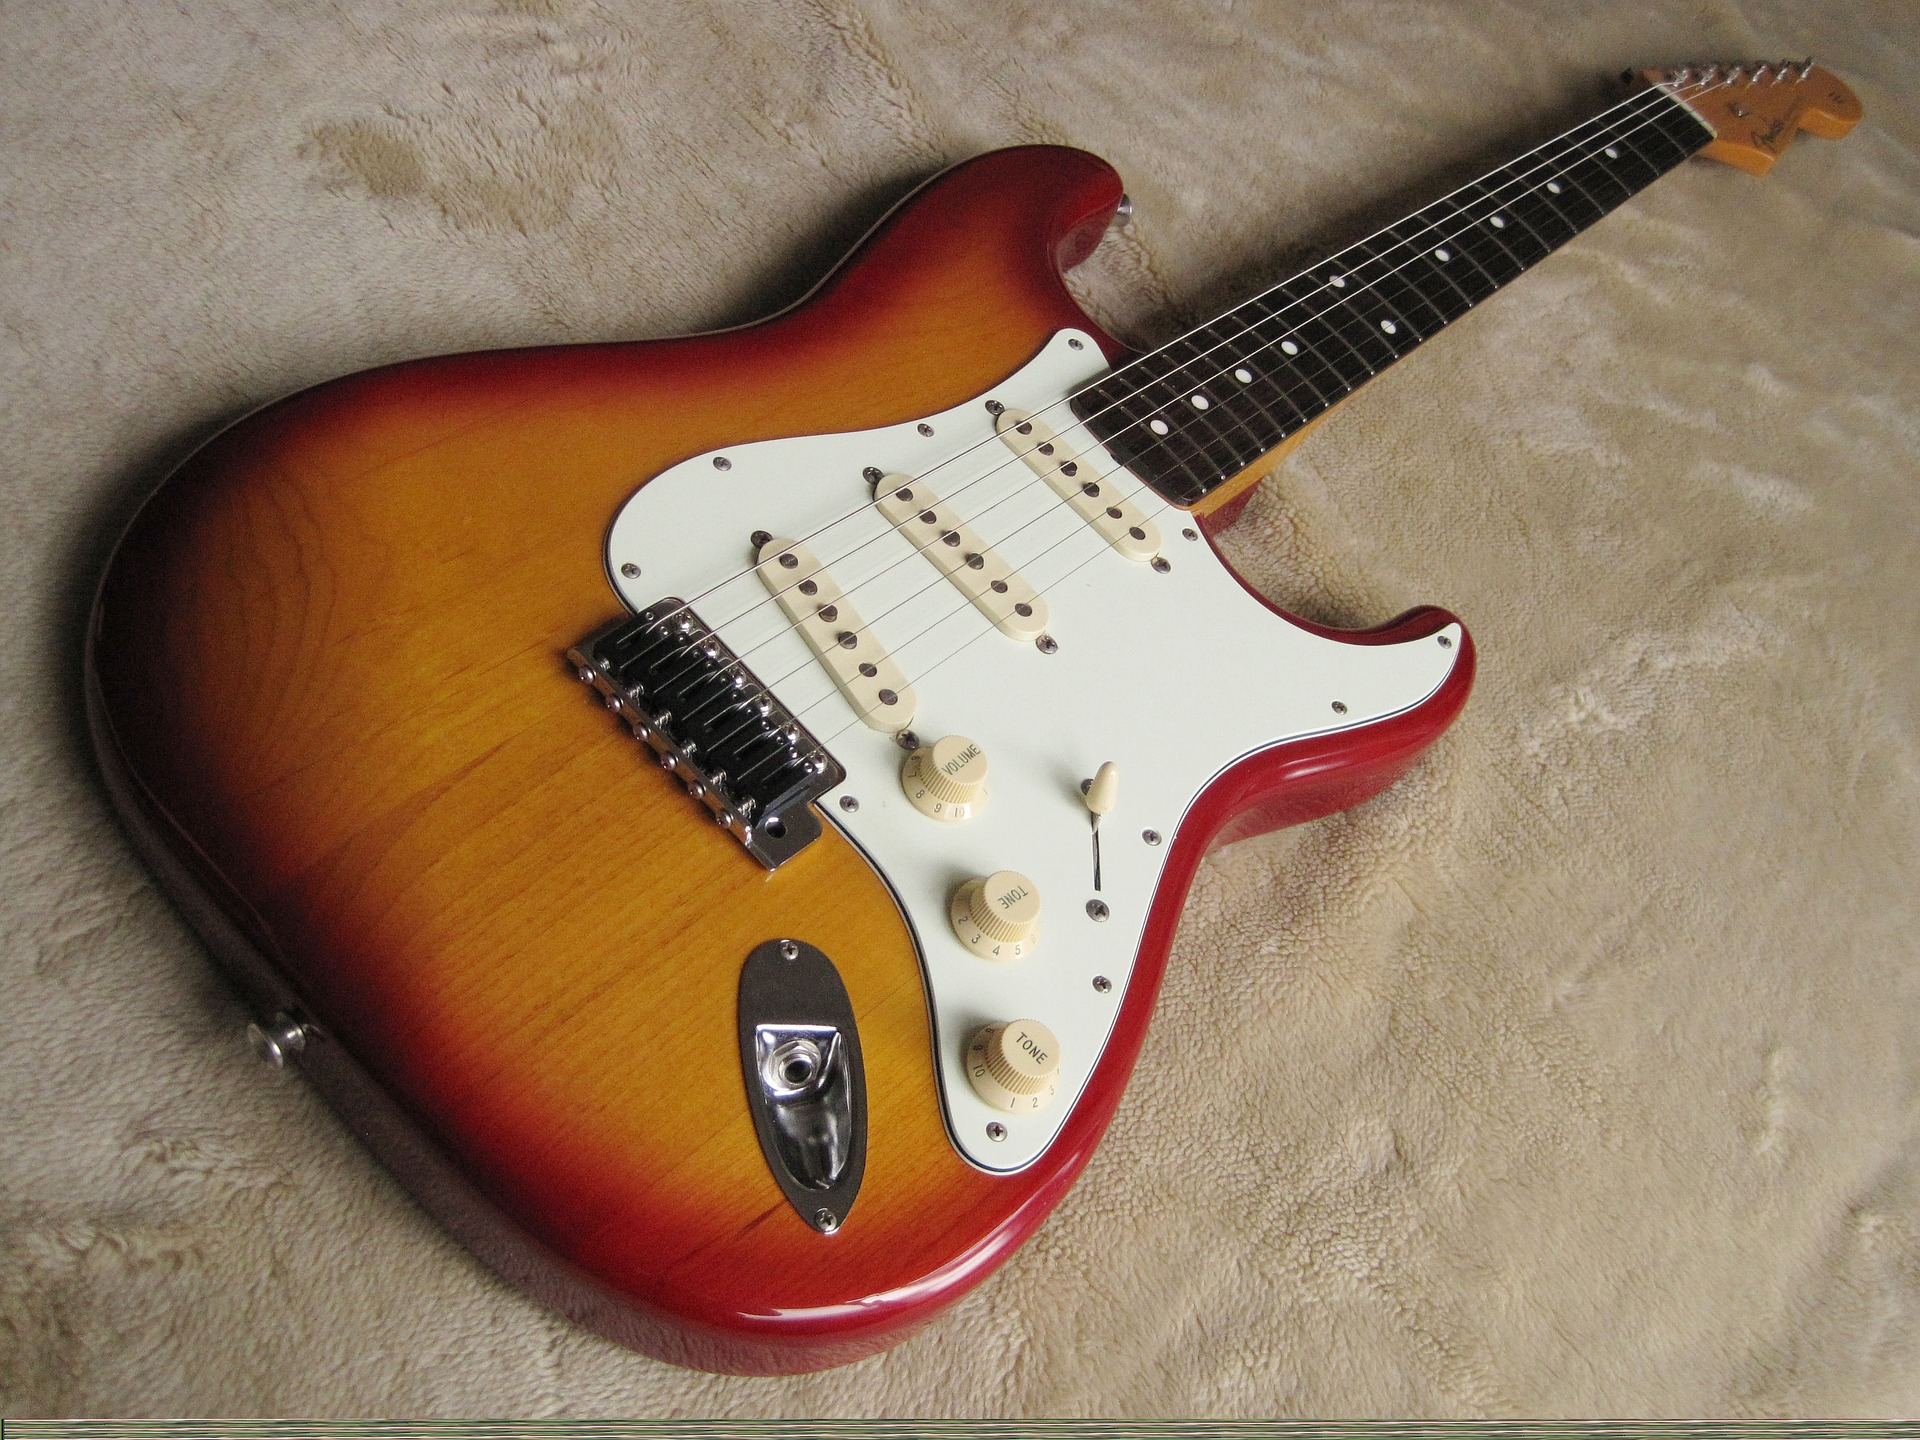 Fender Stratocaster. Источник фото pixabay.com/